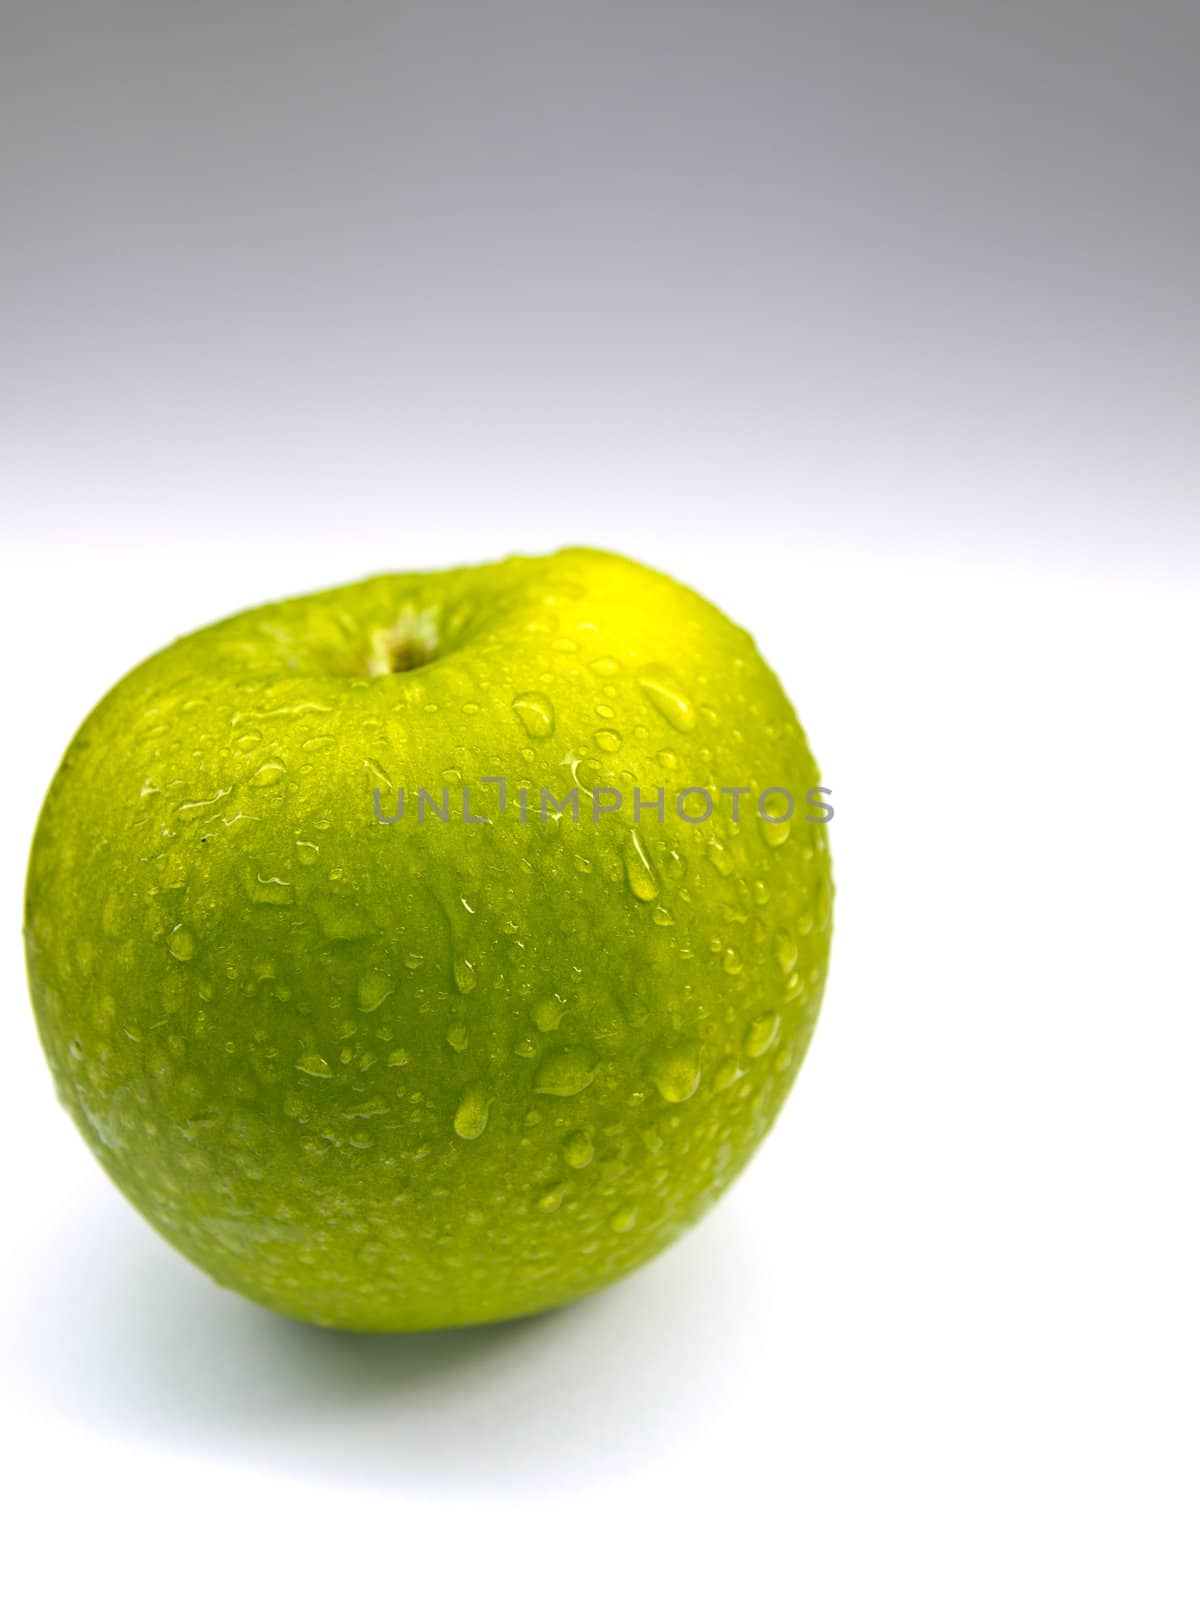 Green apple on white background by gjeerawut